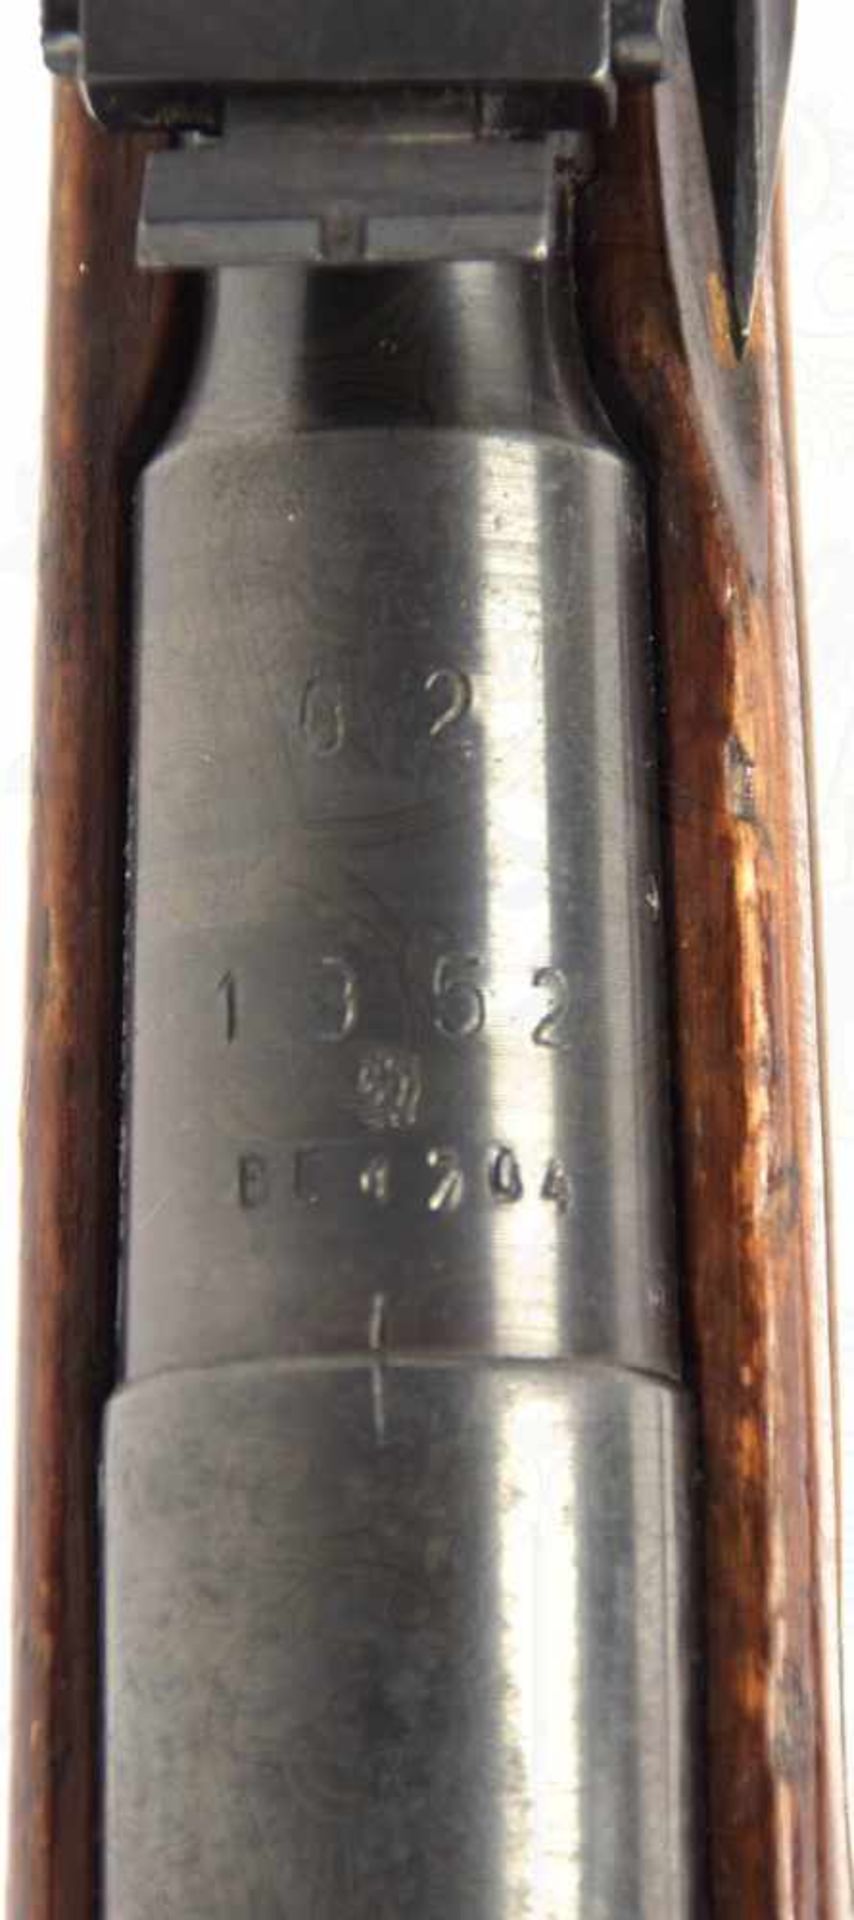 KARABINER MOSIN-NAGANT M 1891/44, 2. Modell, Kal. 7,62x54R, Nr. BC 1704, Herst. v. 1952, Ulmer - Bild 6 aus 22